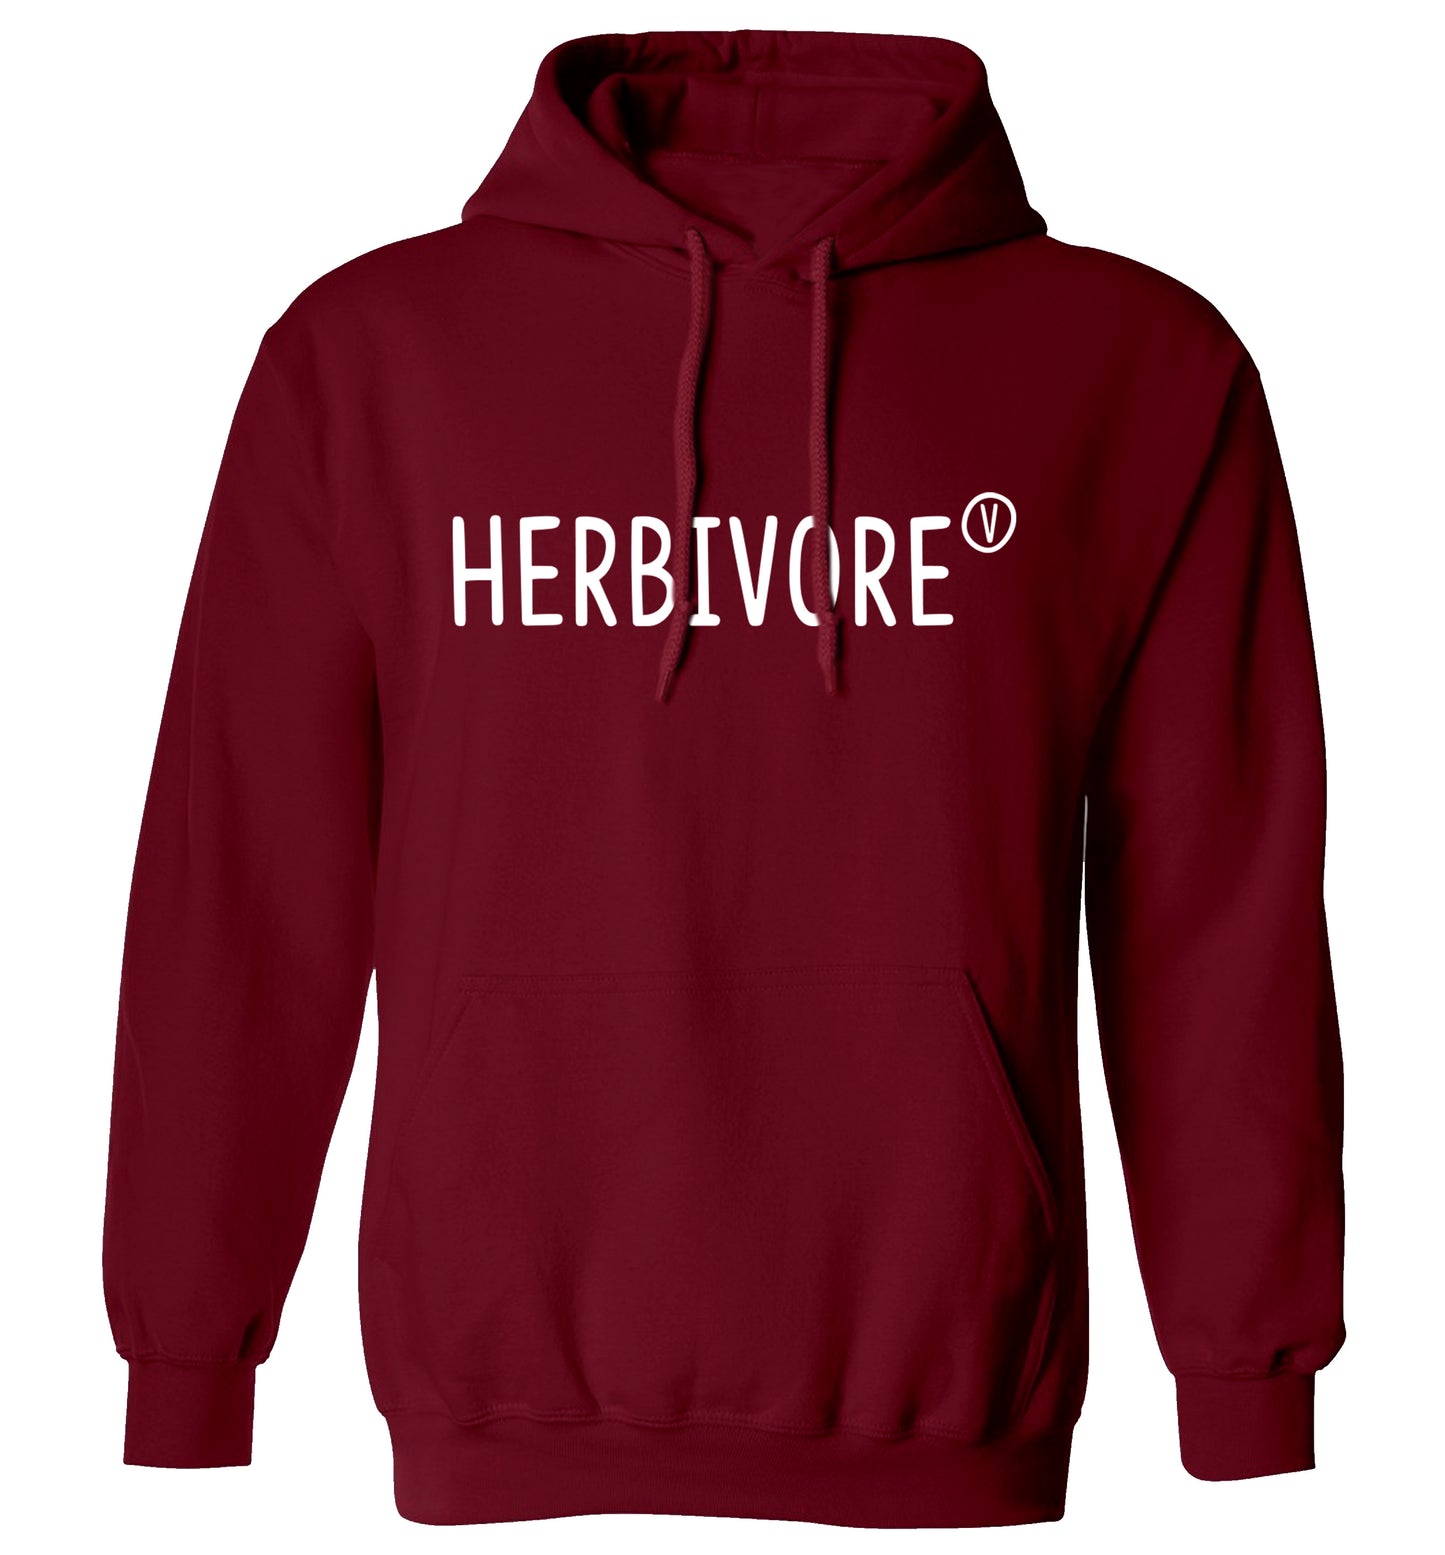 Herbivore adults unisex maroon hoodie 2XL